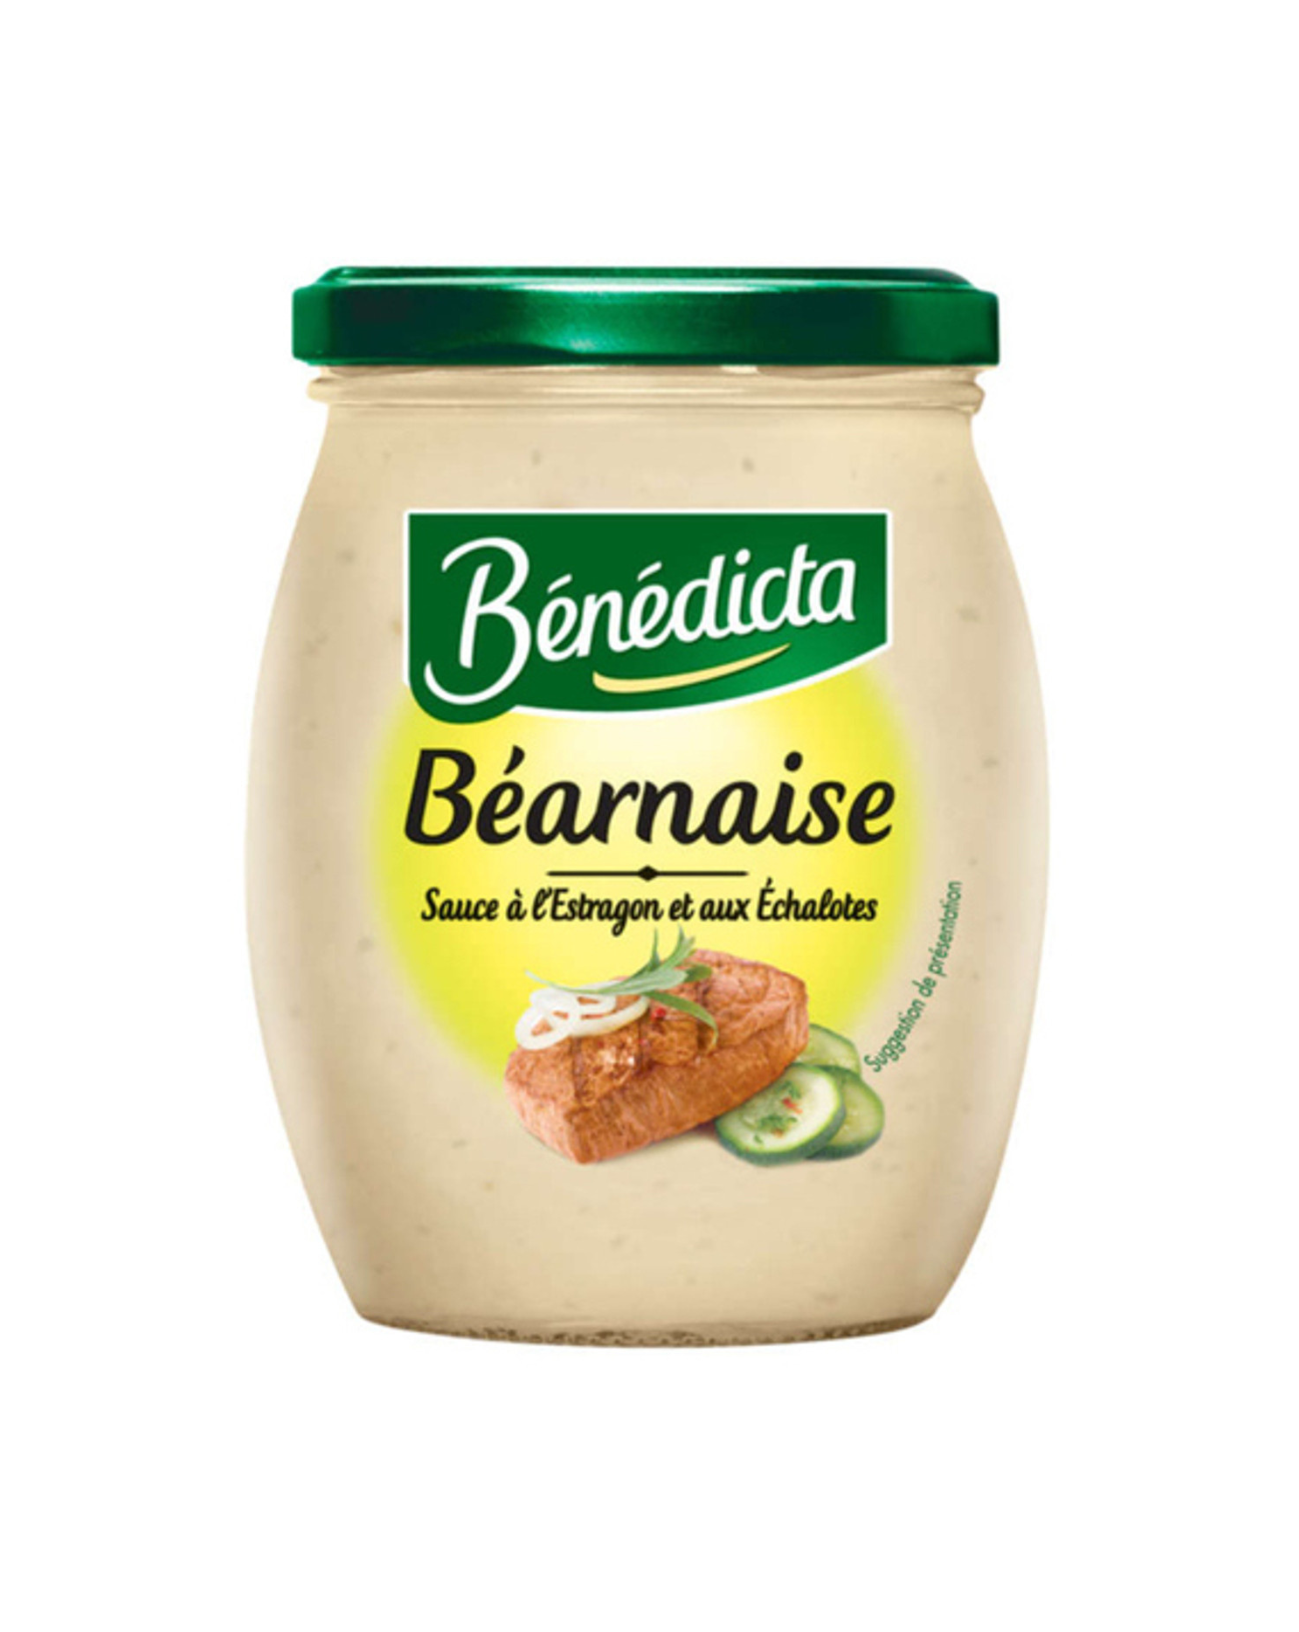 Benedicta bearnaise Sauce jar with green top